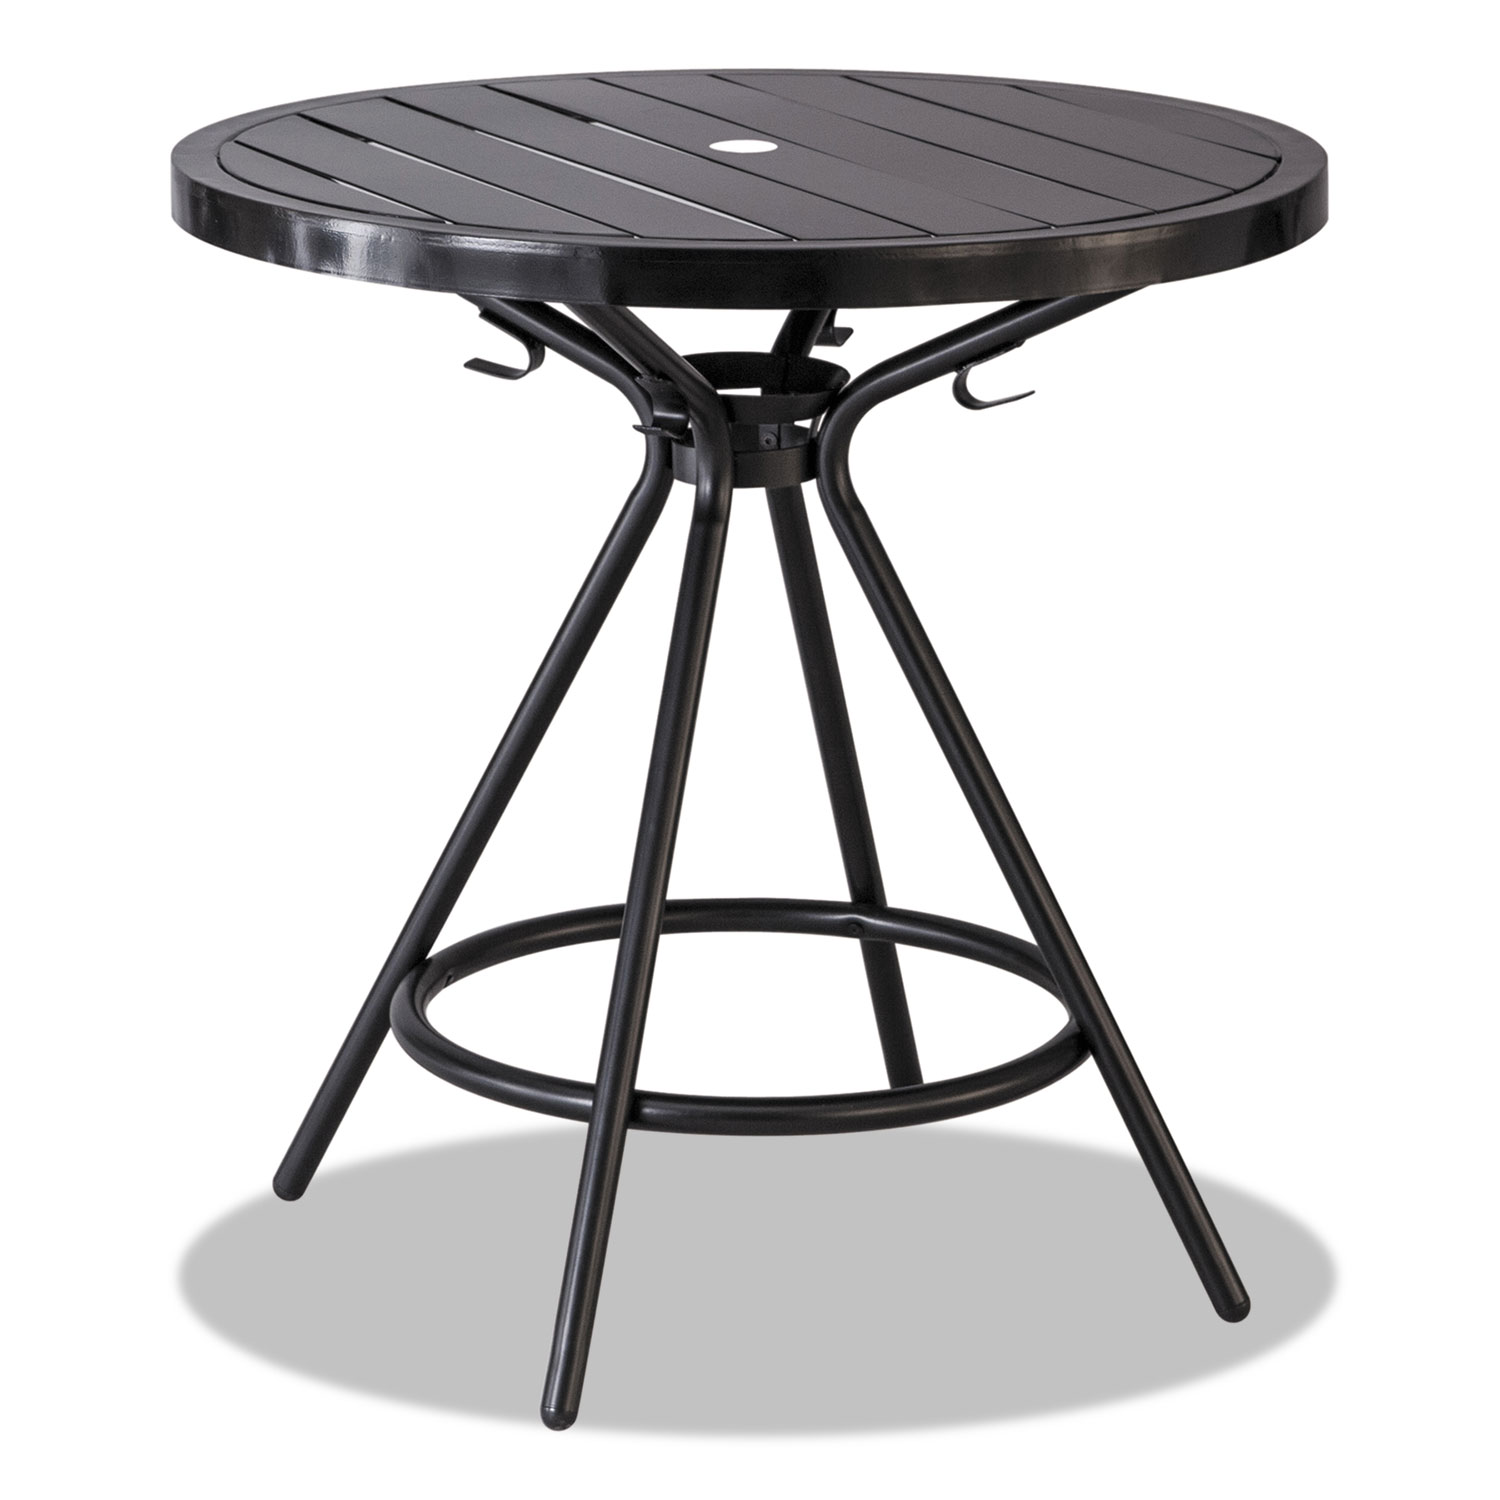  Safco 4361BL CoGo Tables, Steel, Round, 30 Diameter x 29 1/2 High, Black (SAF4361BL) 